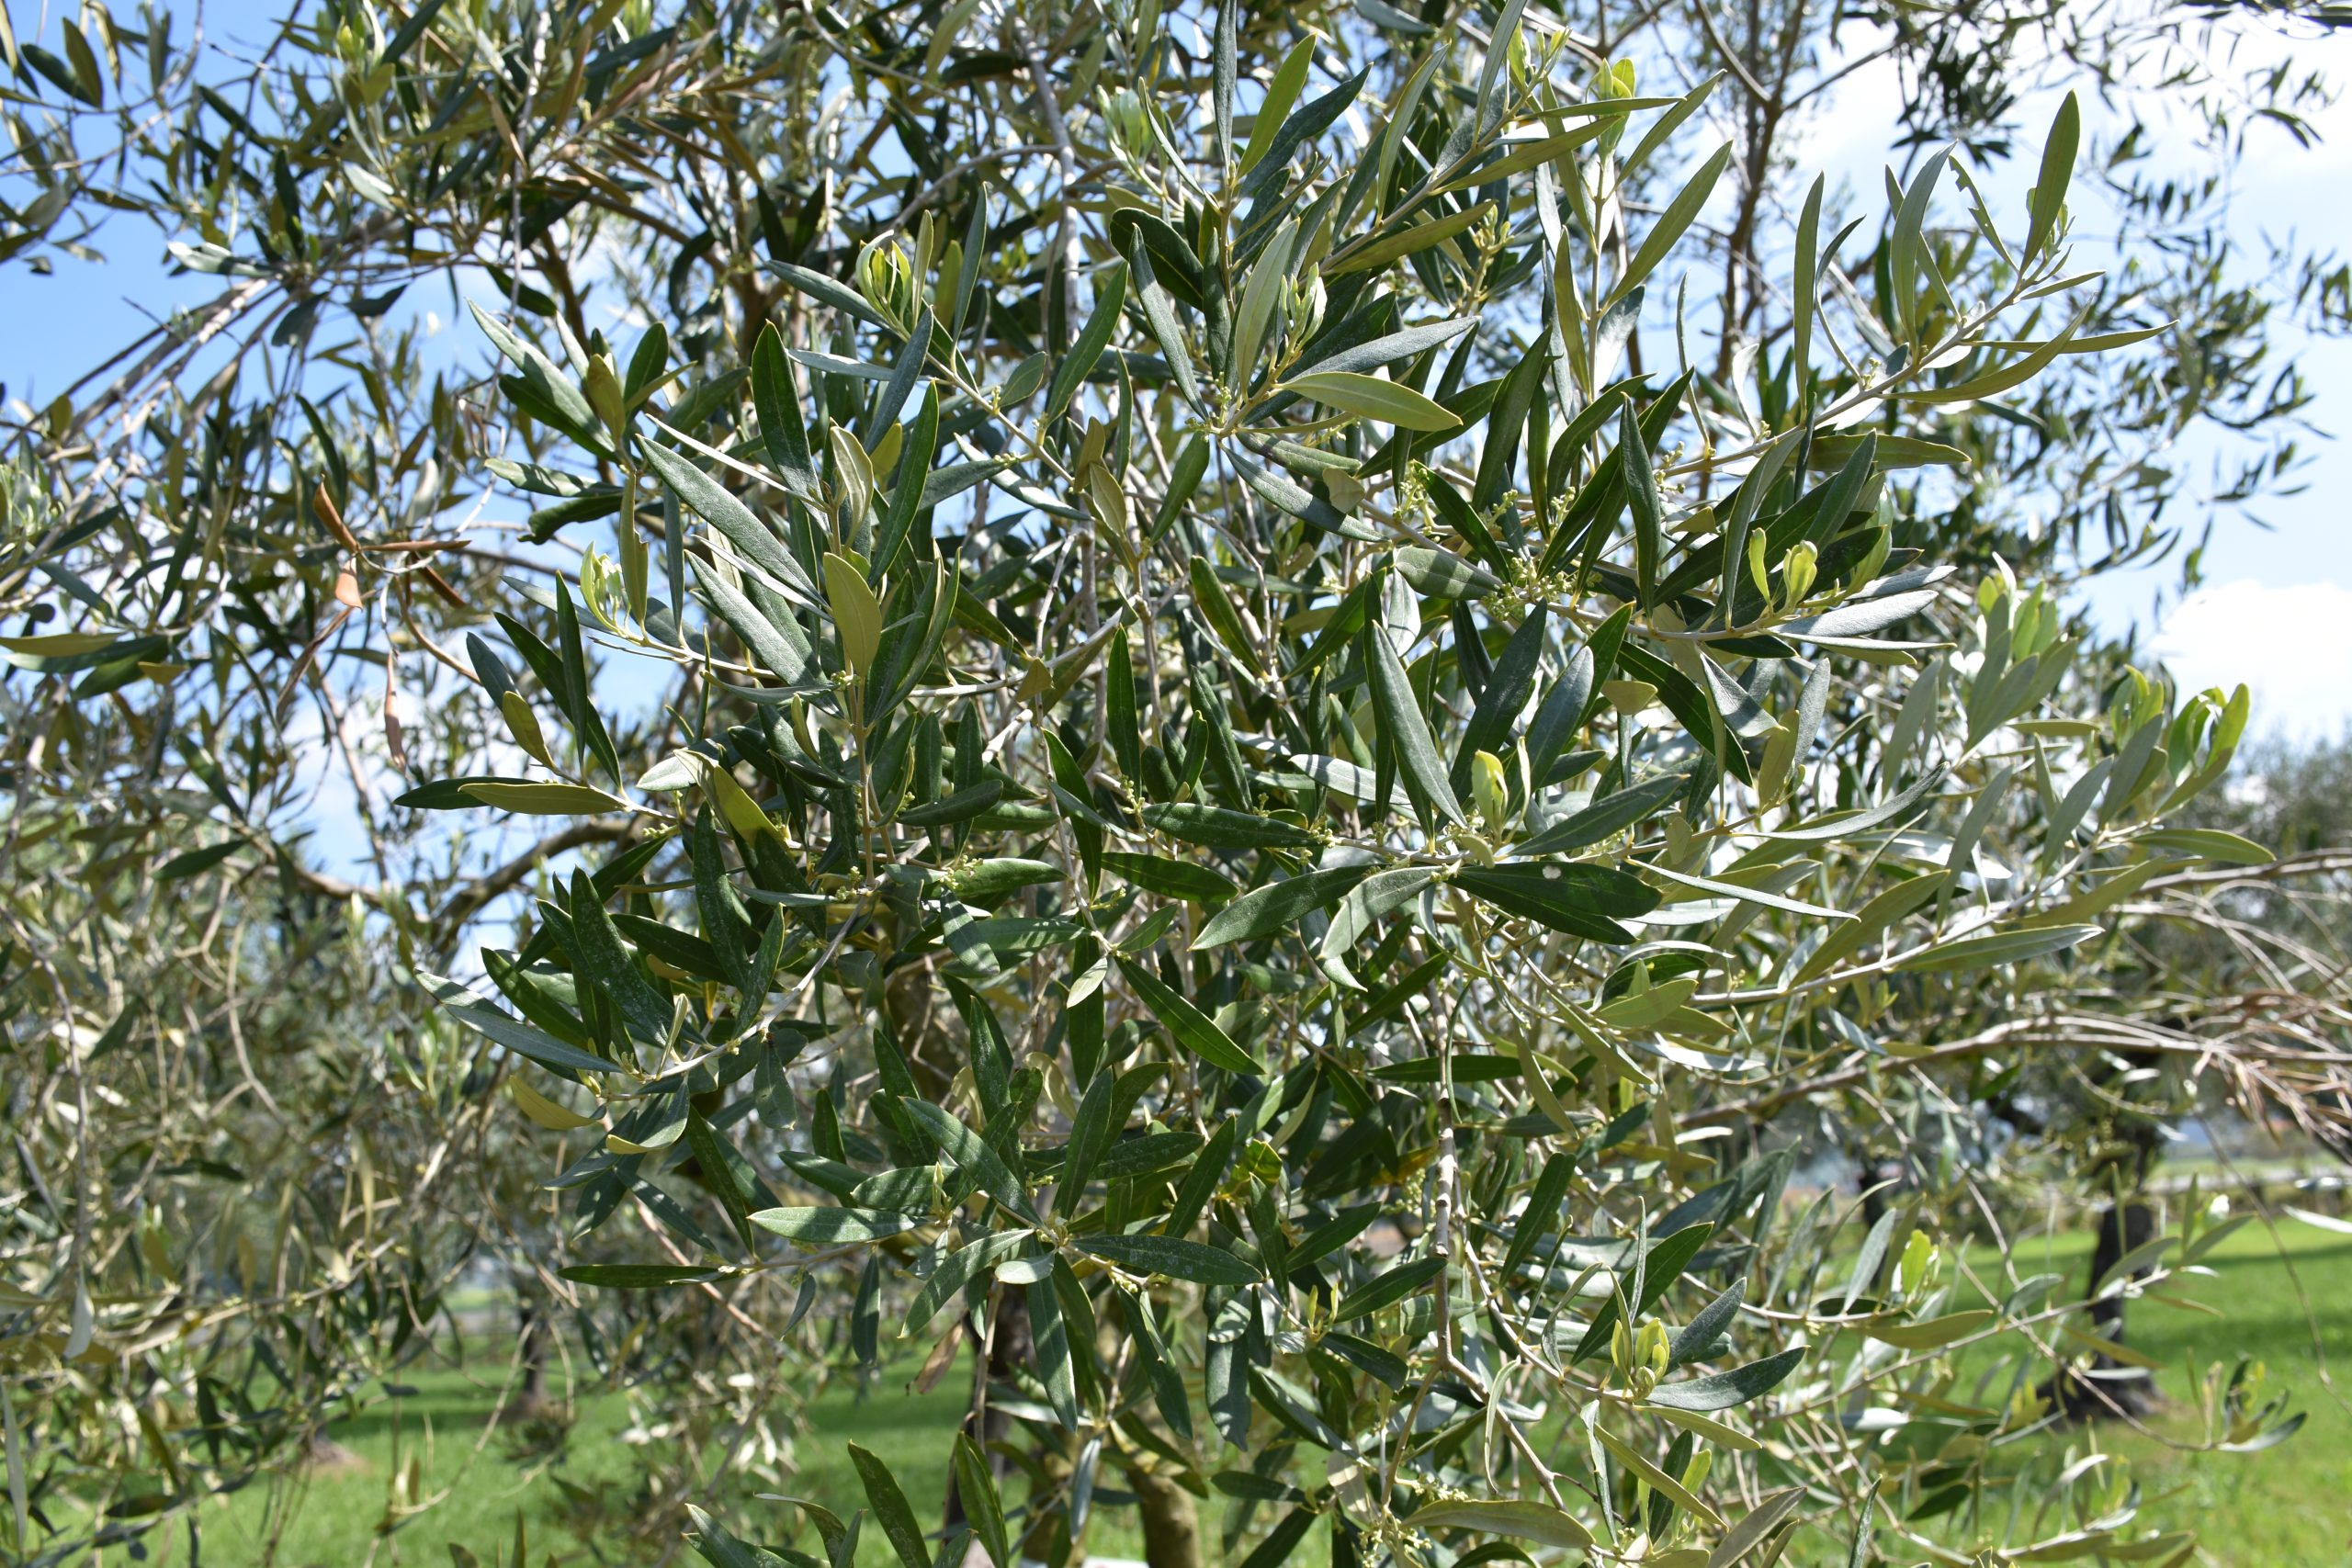 Life Resilience si conclude: individuati 18 genotipi di olivi potenzialmente resistenti alla Xylella fastidiosa